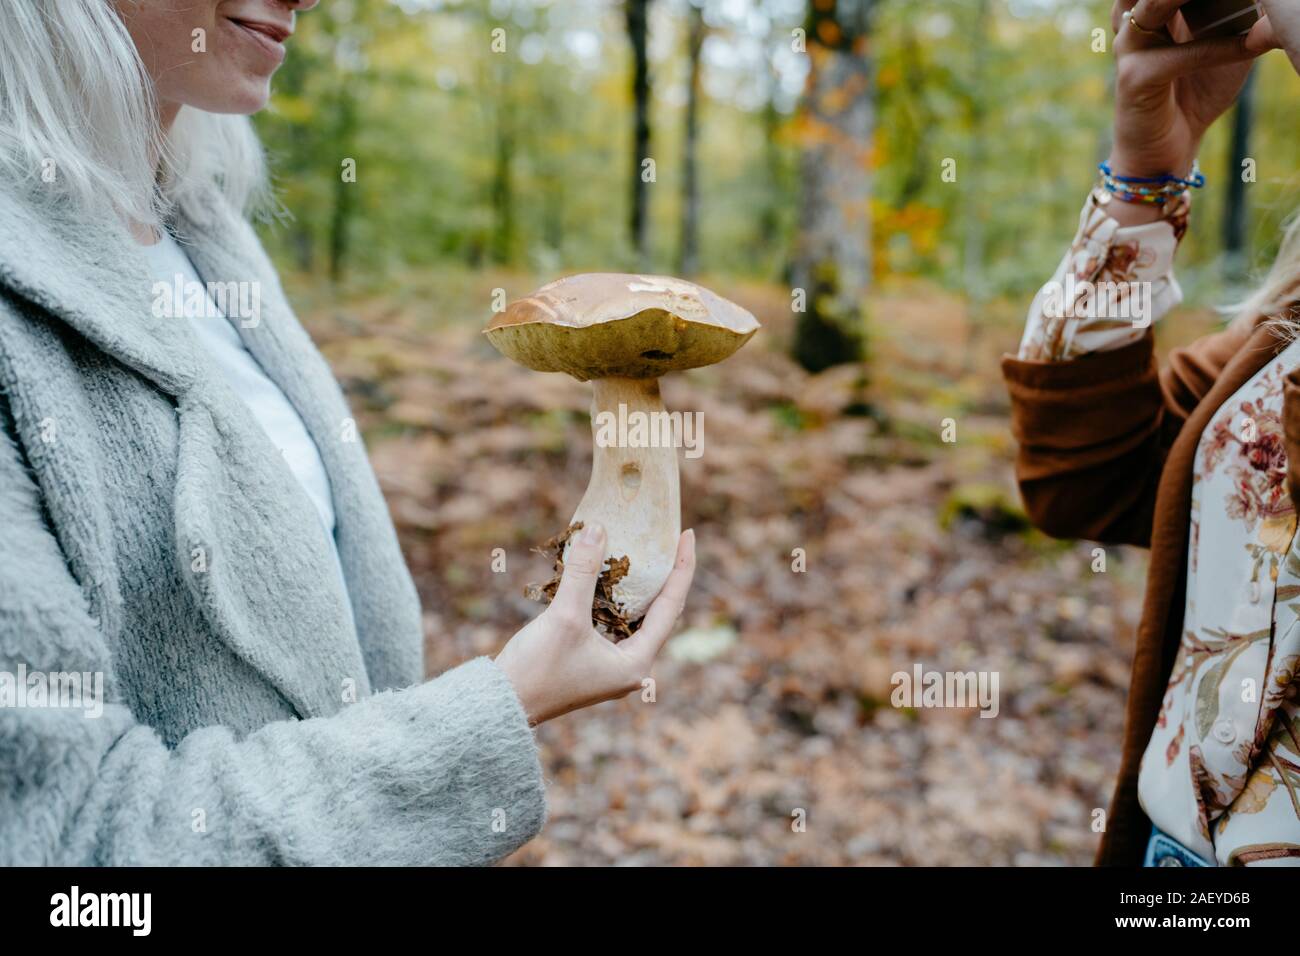 Les jeunes femmes à prendre des photos d'un champignon géant dans une forêt Banque D'Images